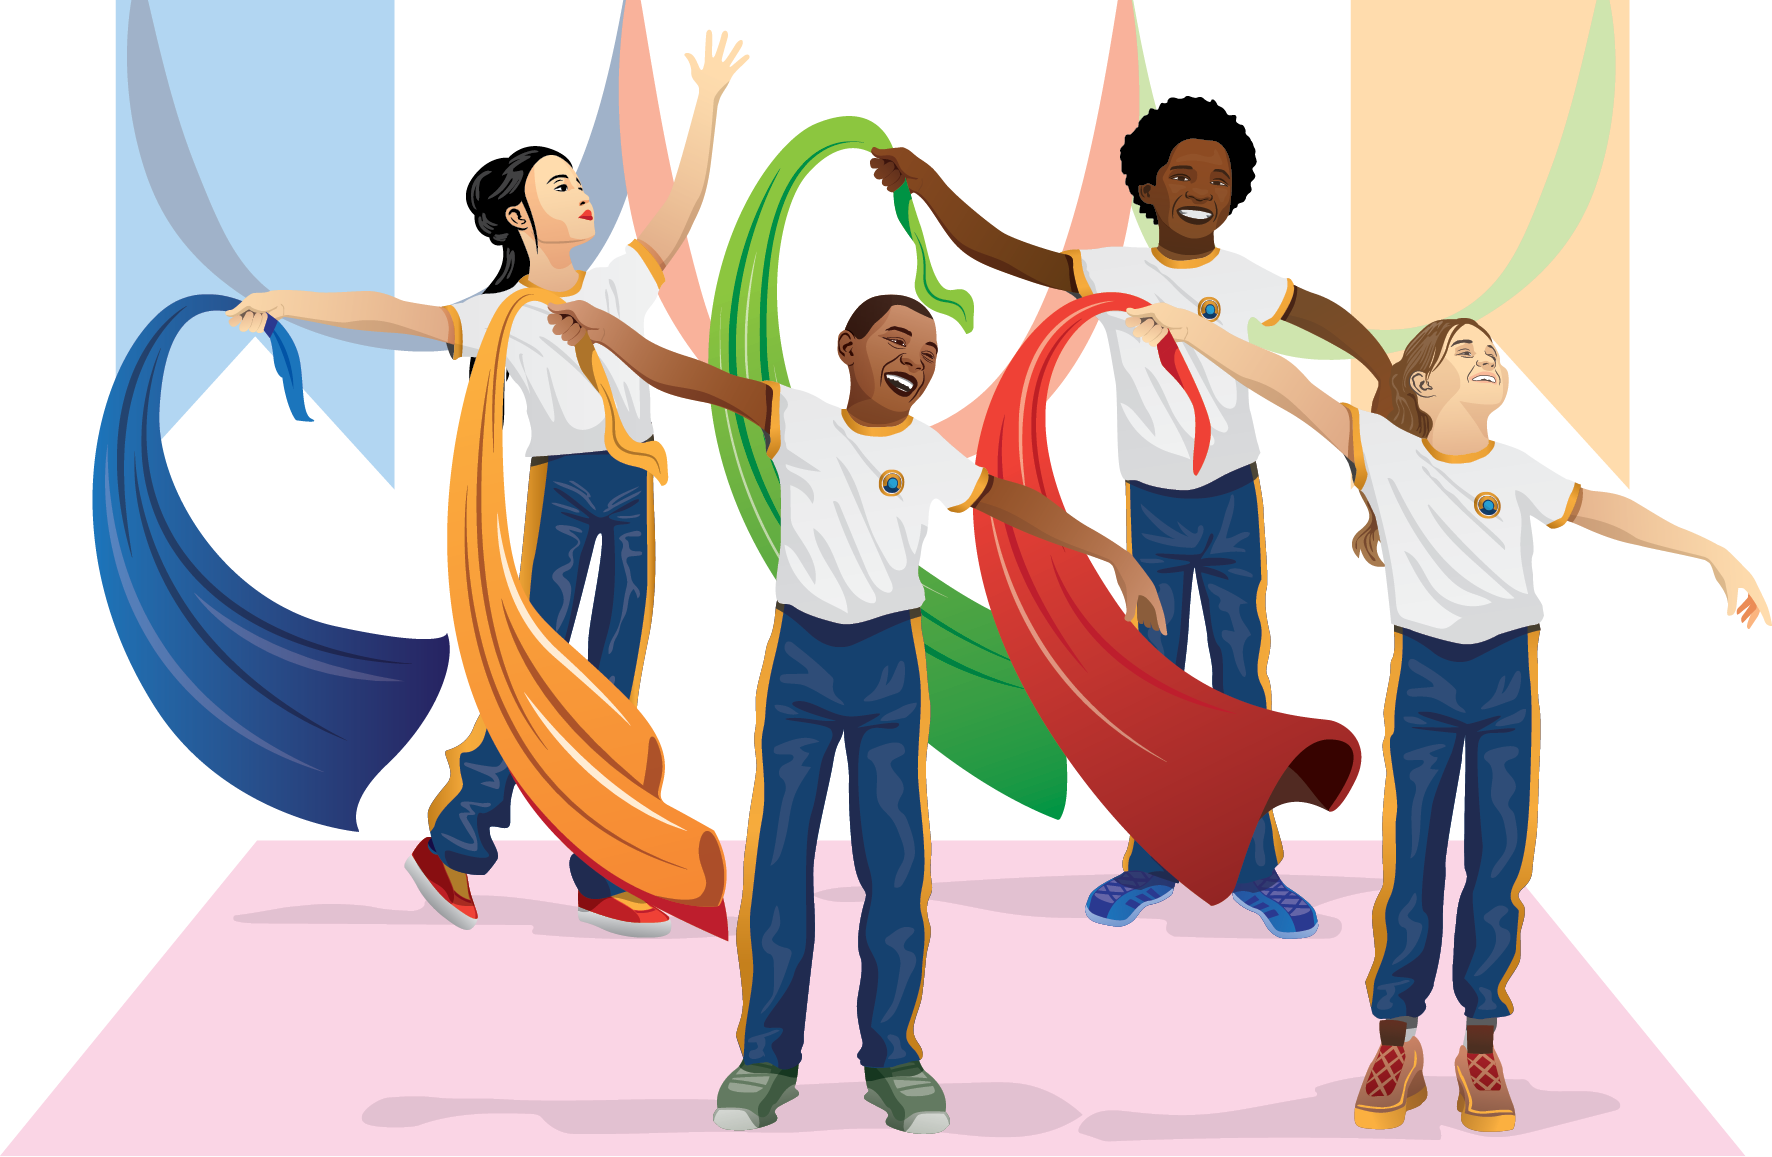 Ilustração. Crianças em movimento de dança. Quatro crianças de uniforme, com camiseta branca e calça azul, agitam com as mãos fitas longas nas cores azul, verde, laranja e vermelho.